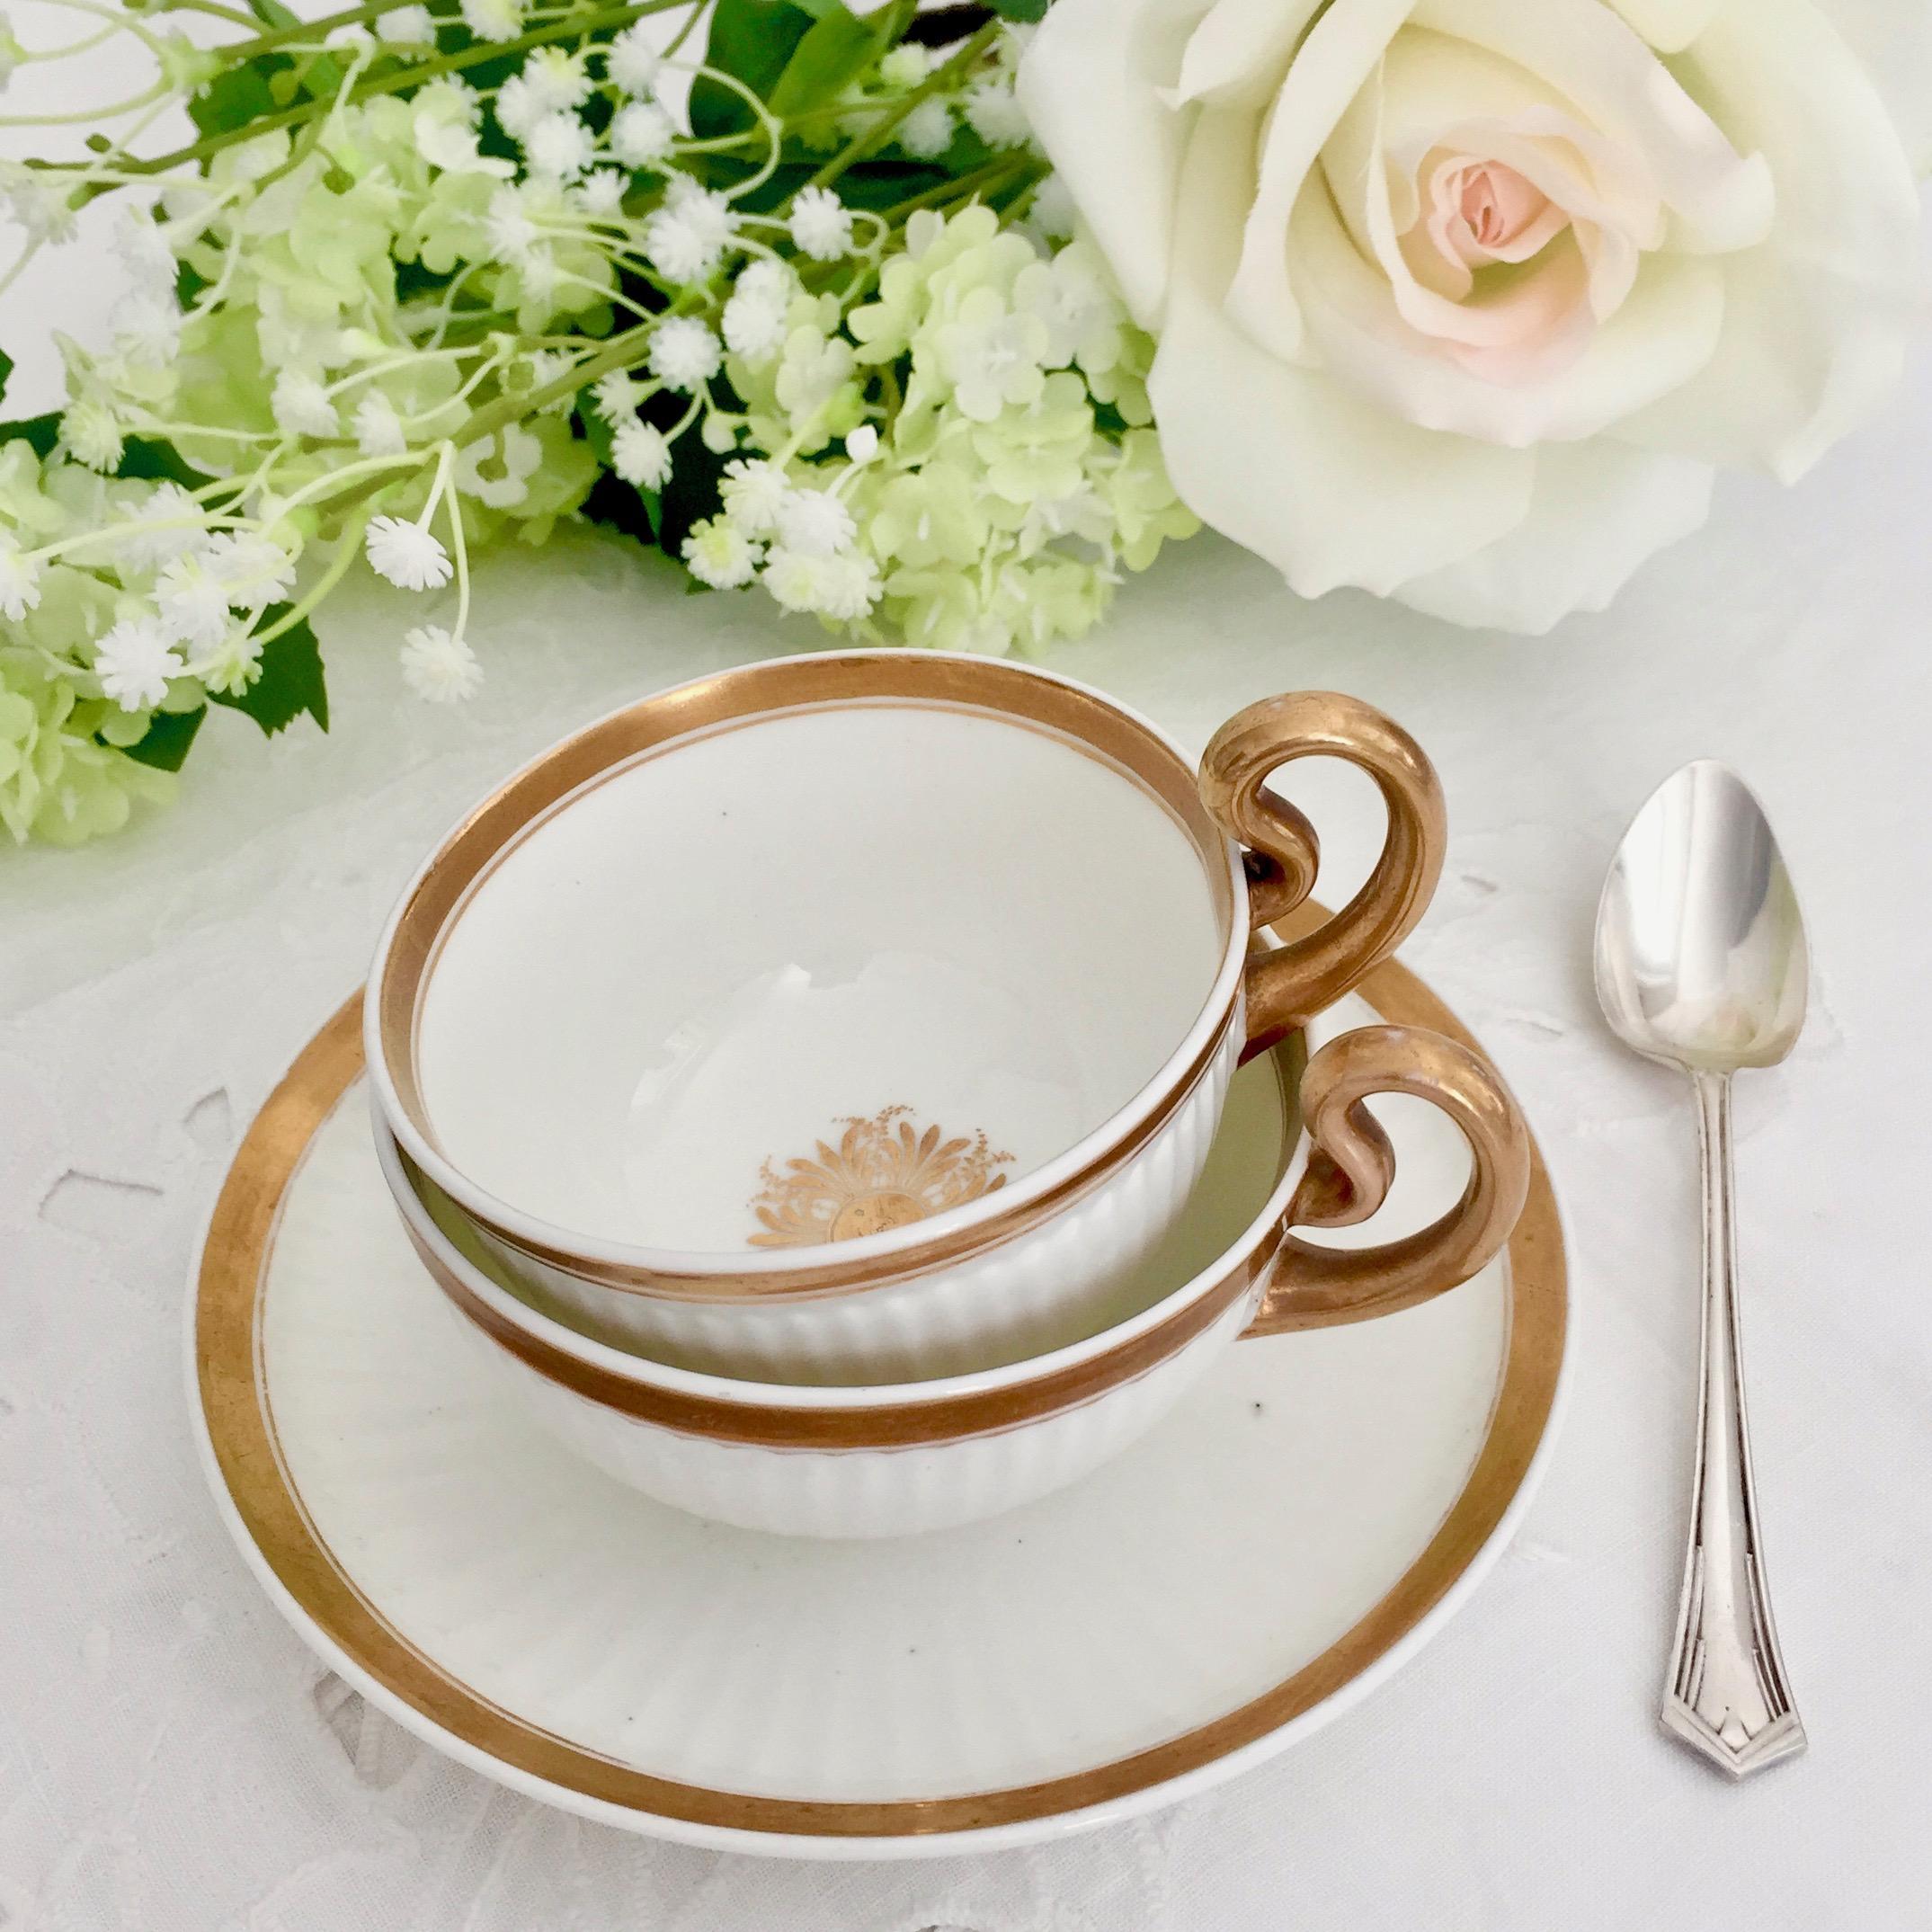 Angeboten wird ein wunderschönes Porzellan-Teeservice aus Swansea, das um 1820, also in der Regency-Ära, hergestellt wurde. Das Set besteht aus einer weiß und vergoldeten Teetasse und einer größeren 